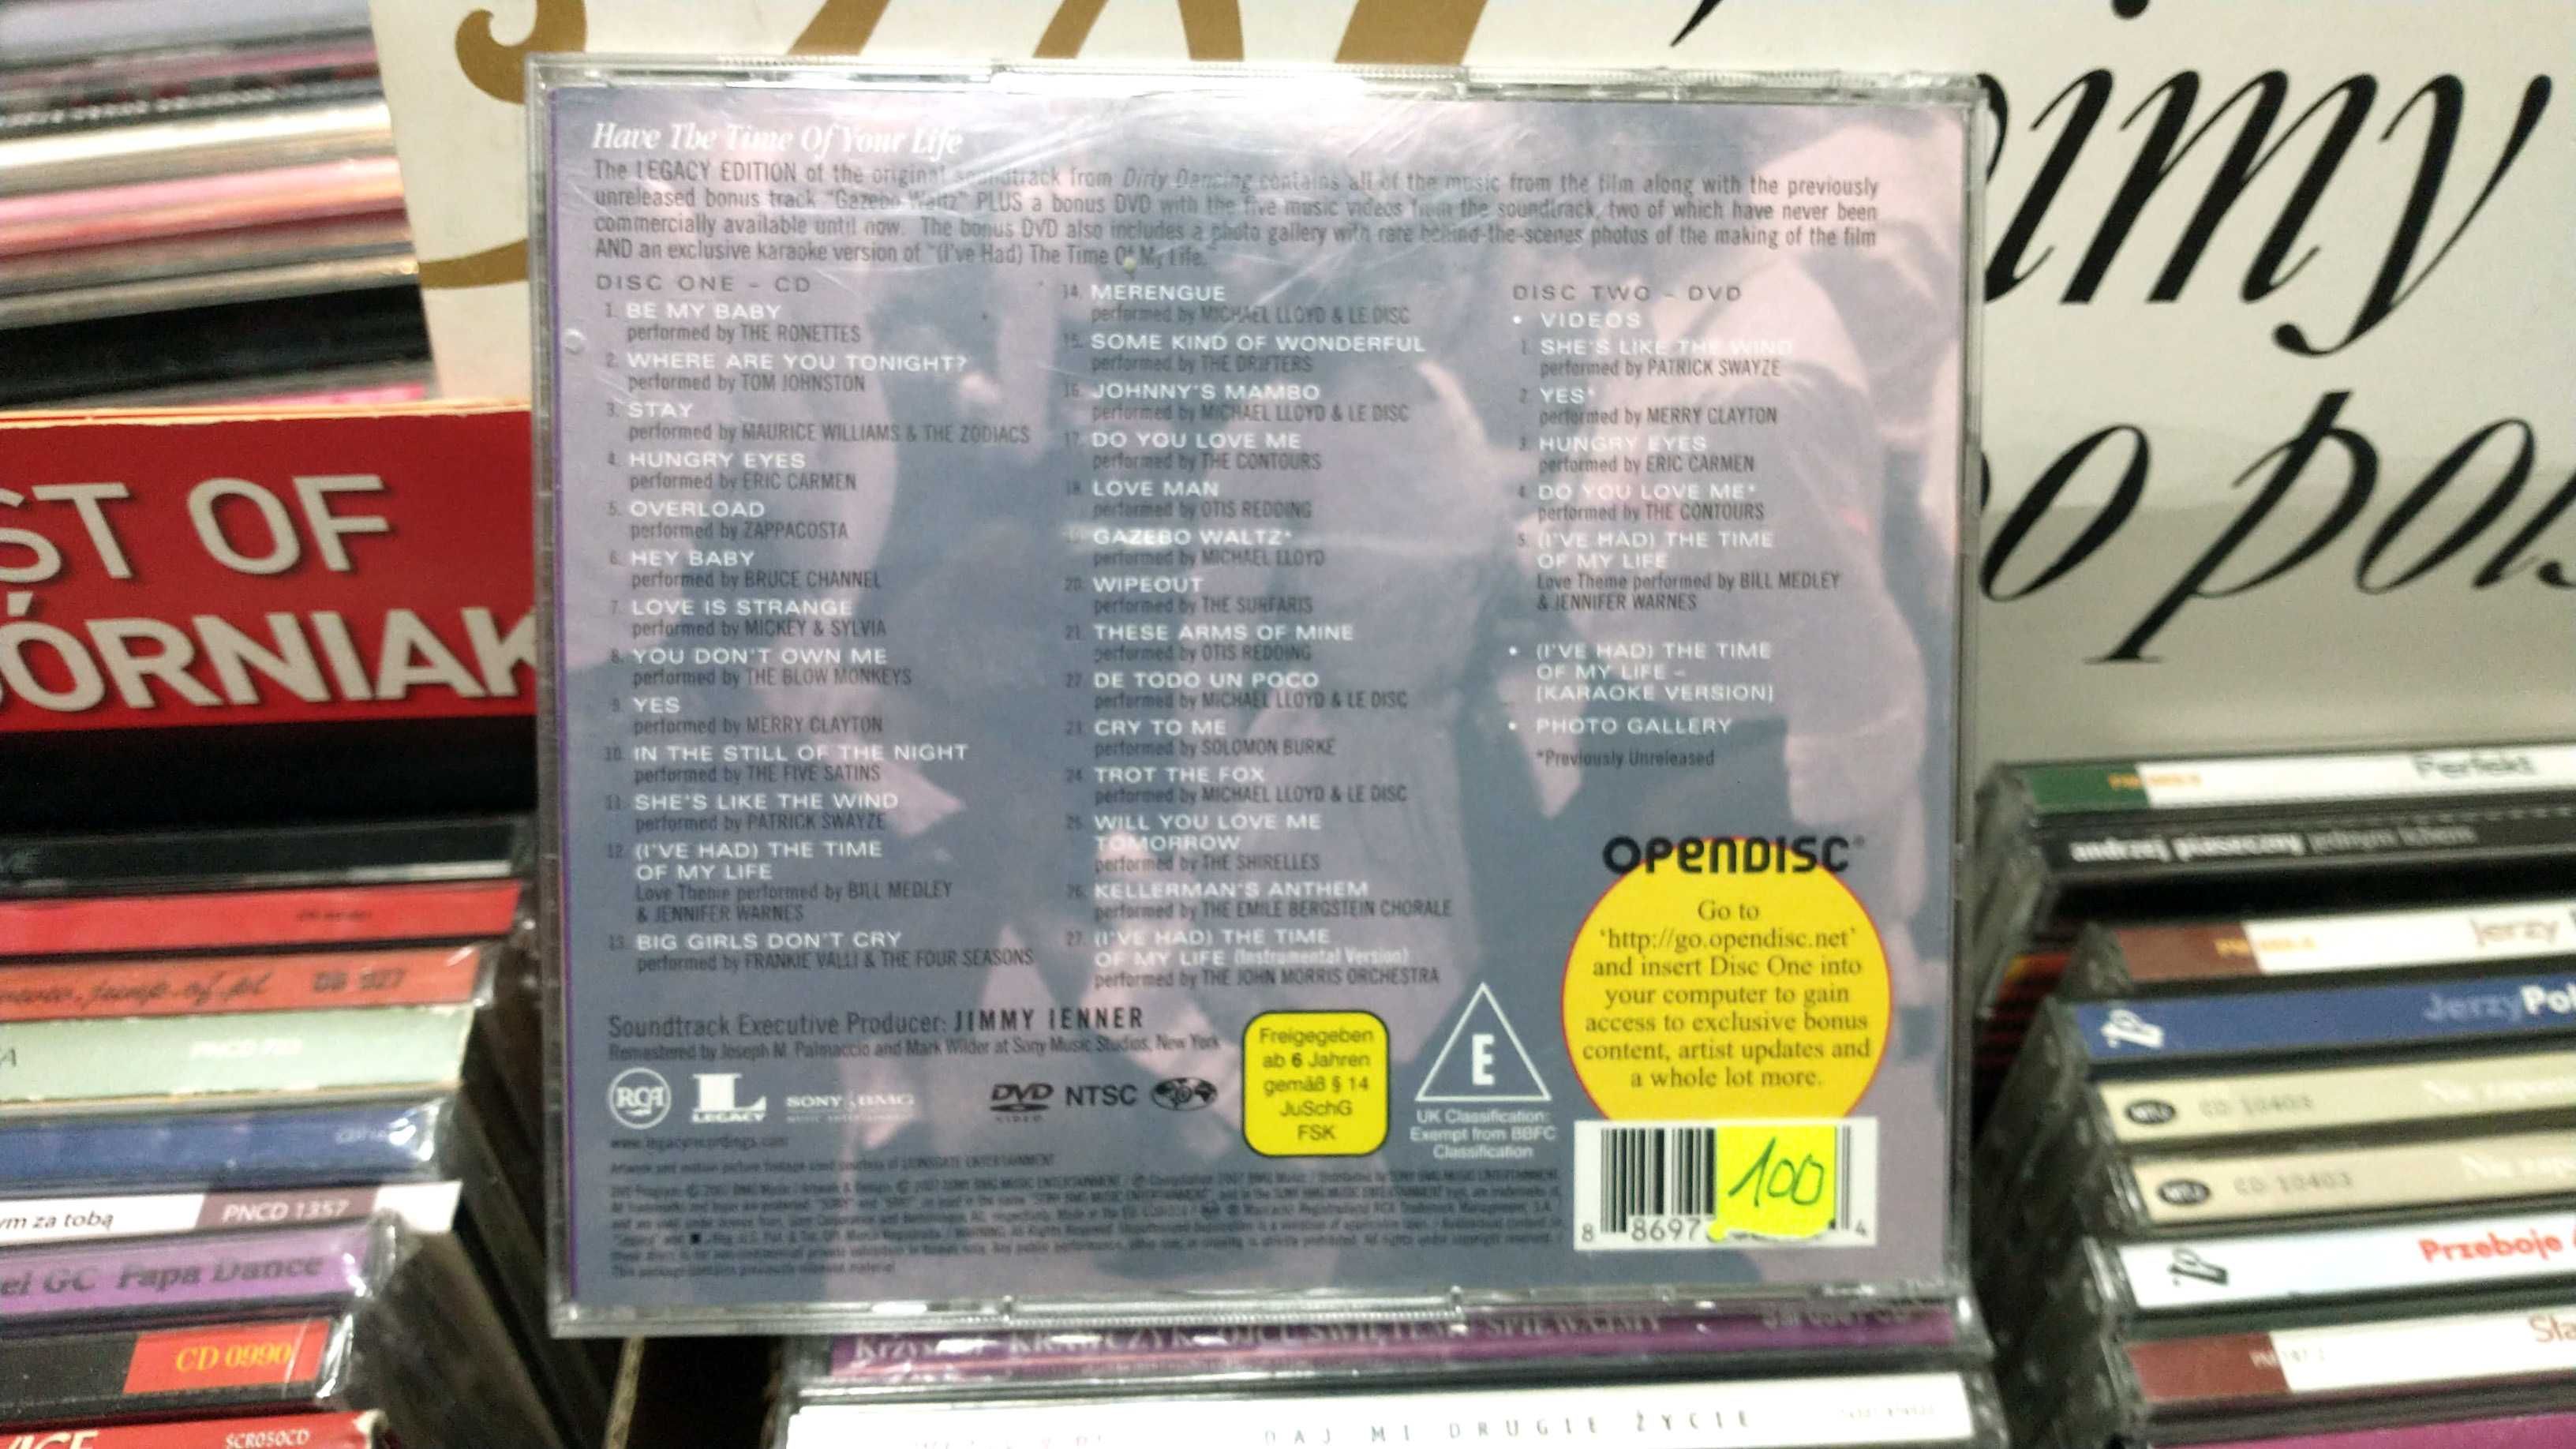 CD DVD Dirty Dancing Patrickl Swayze Wirujący seks BDB-